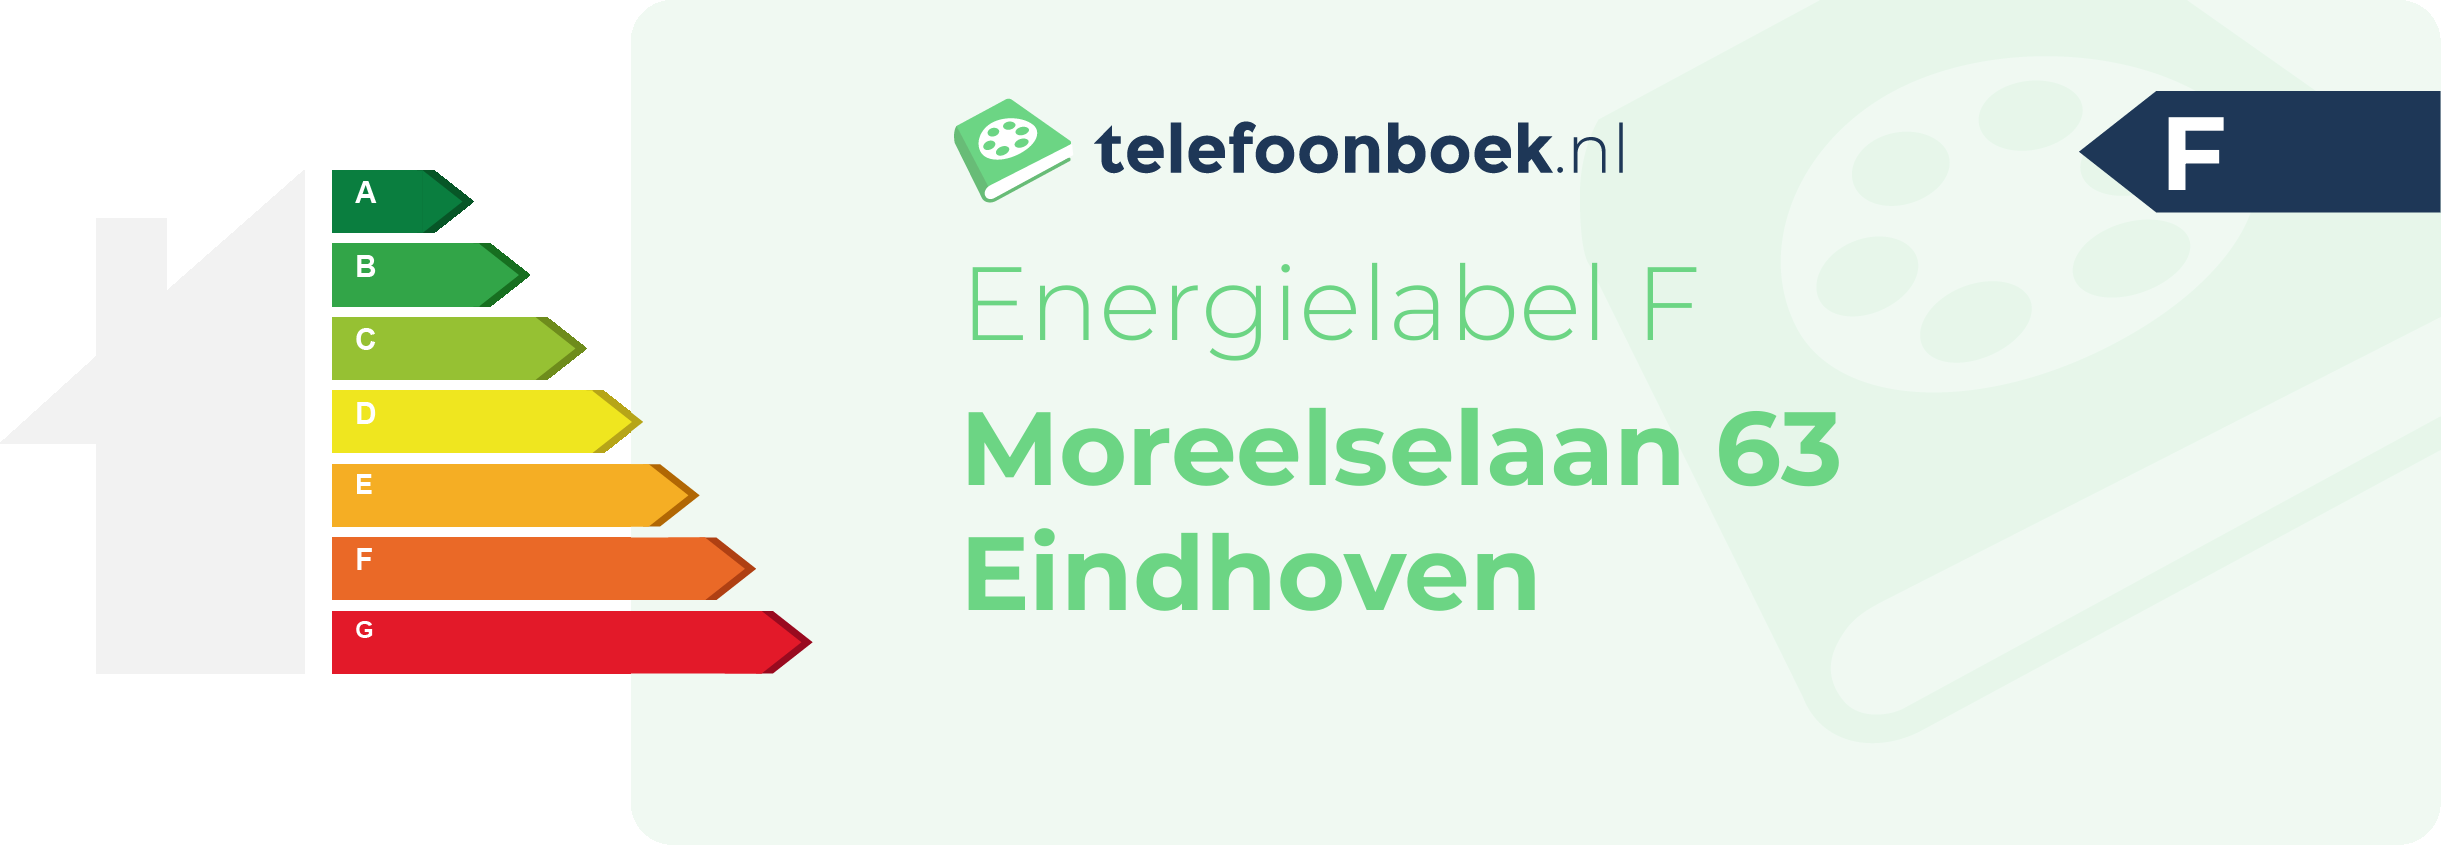 Energielabel Moreelselaan 63 Eindhoven